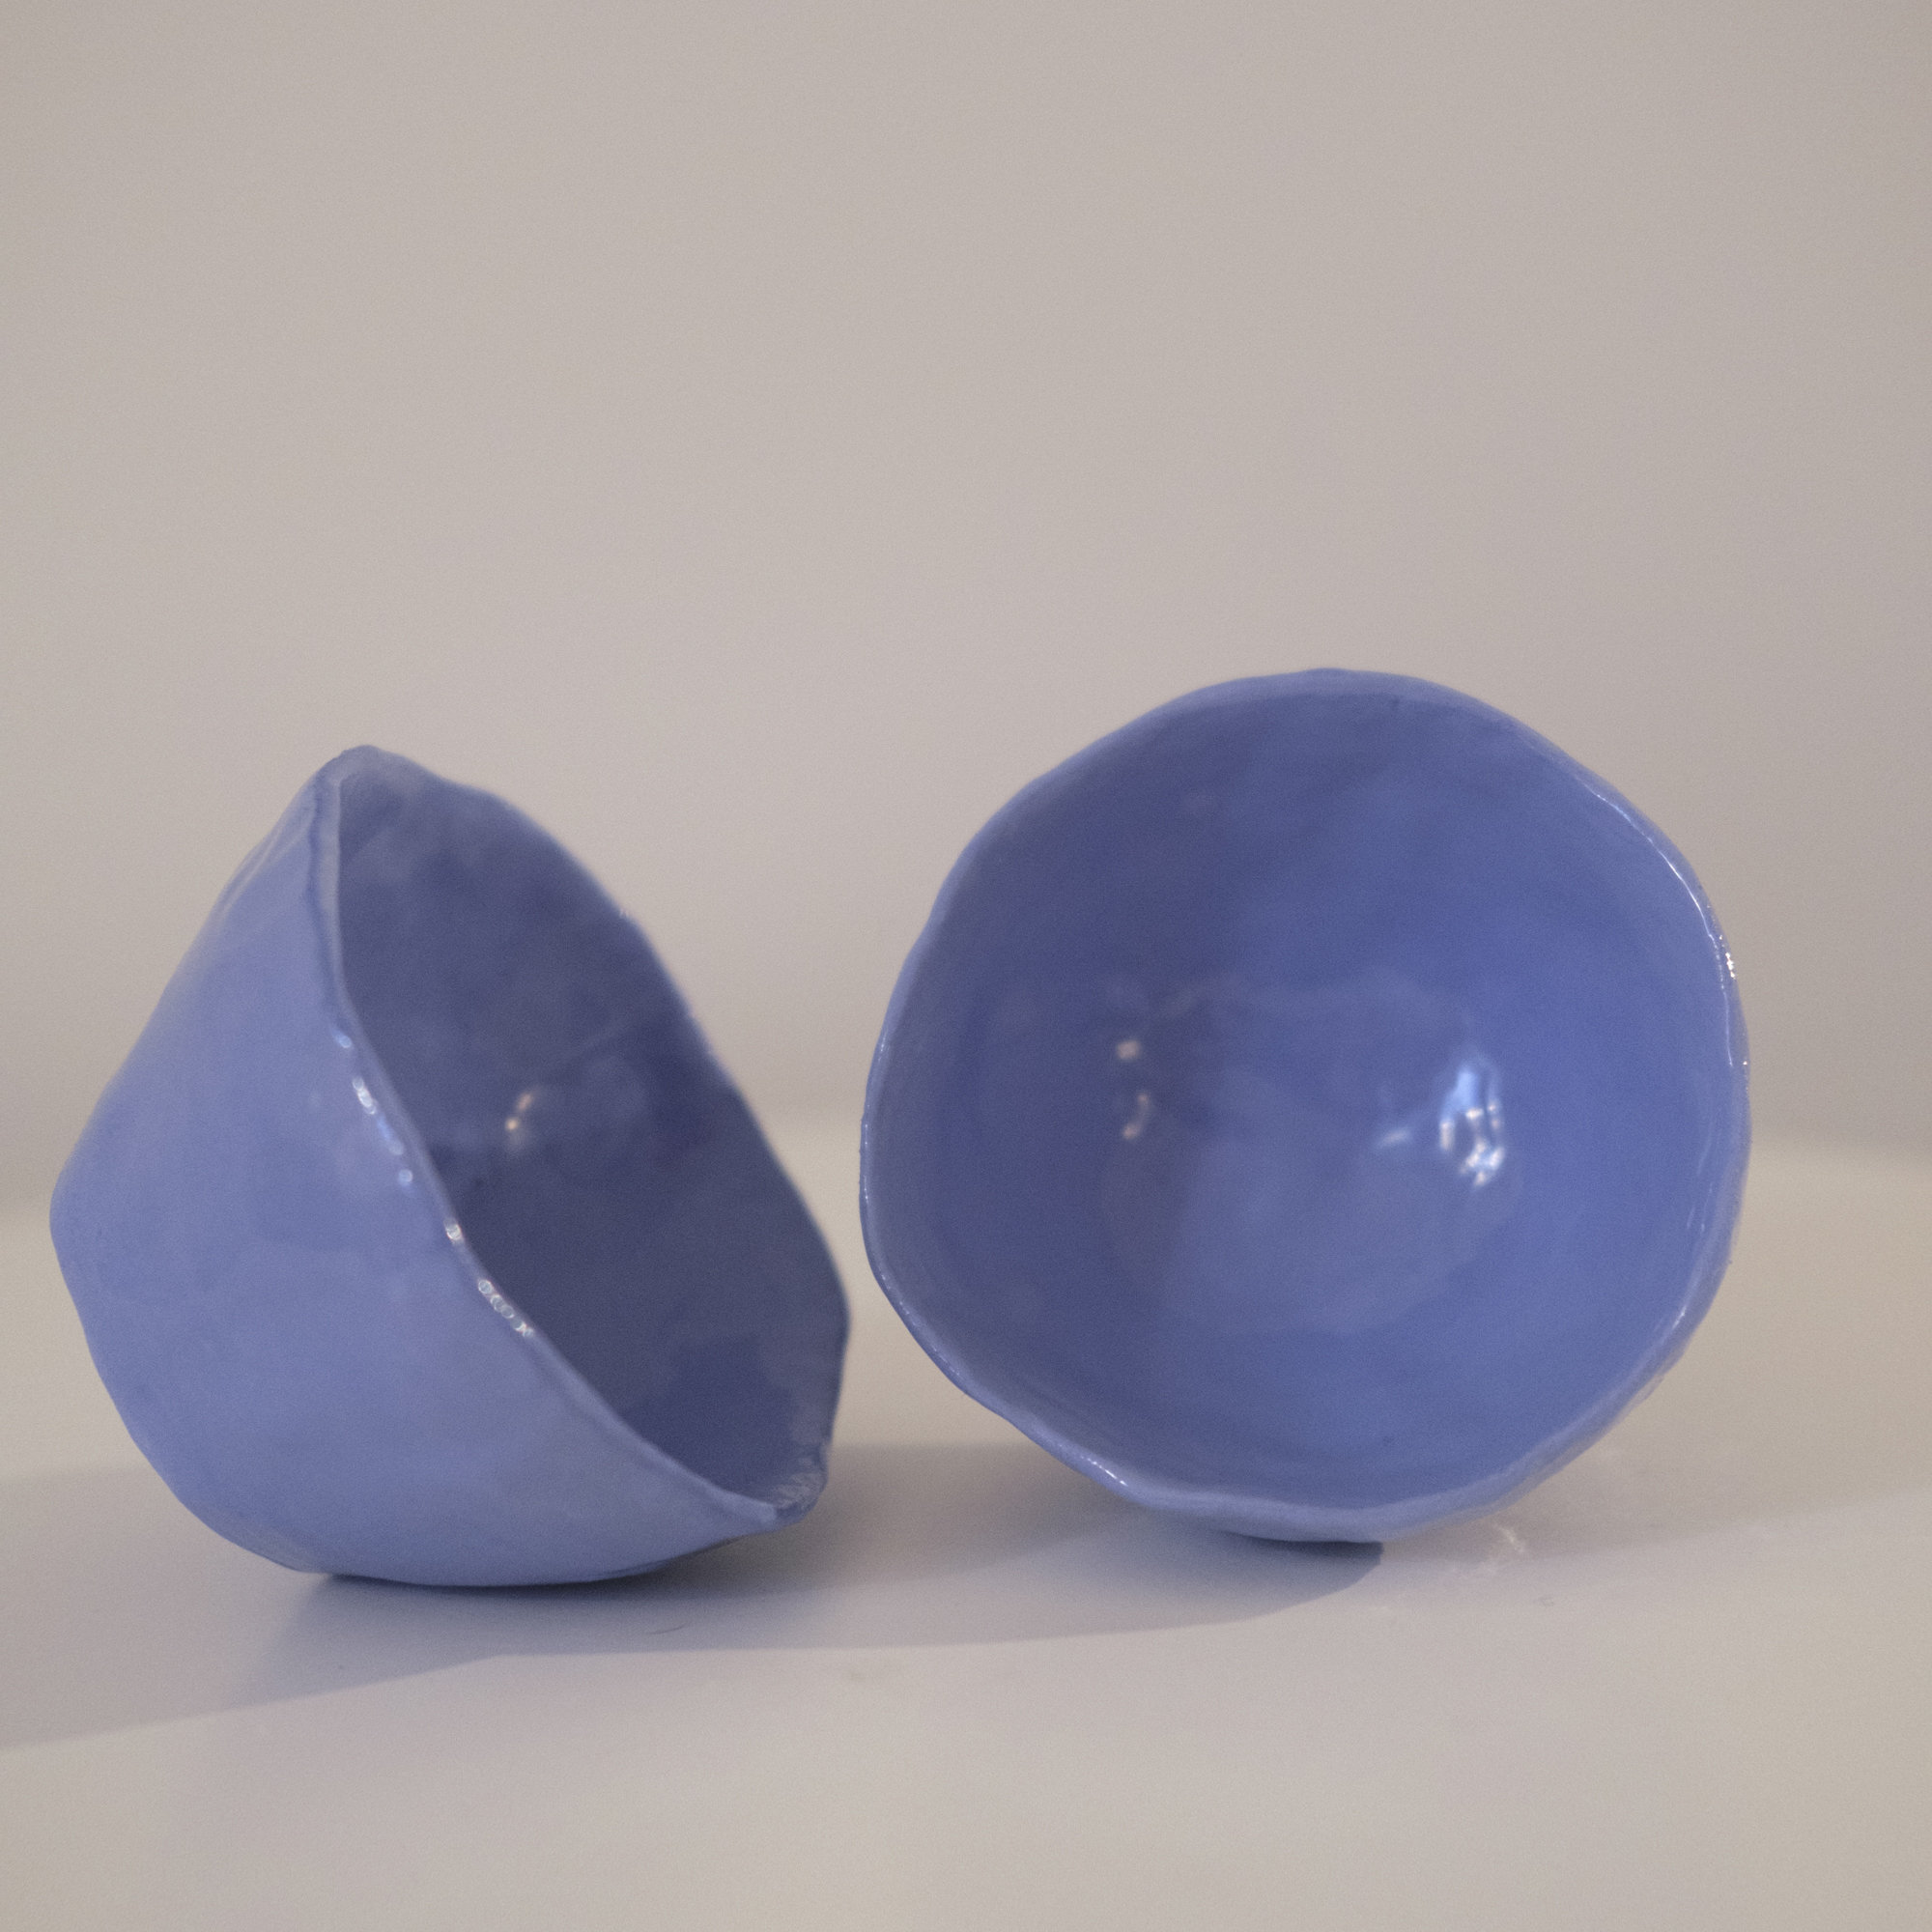 Duos de Petites Tasses en Faïence Bleue